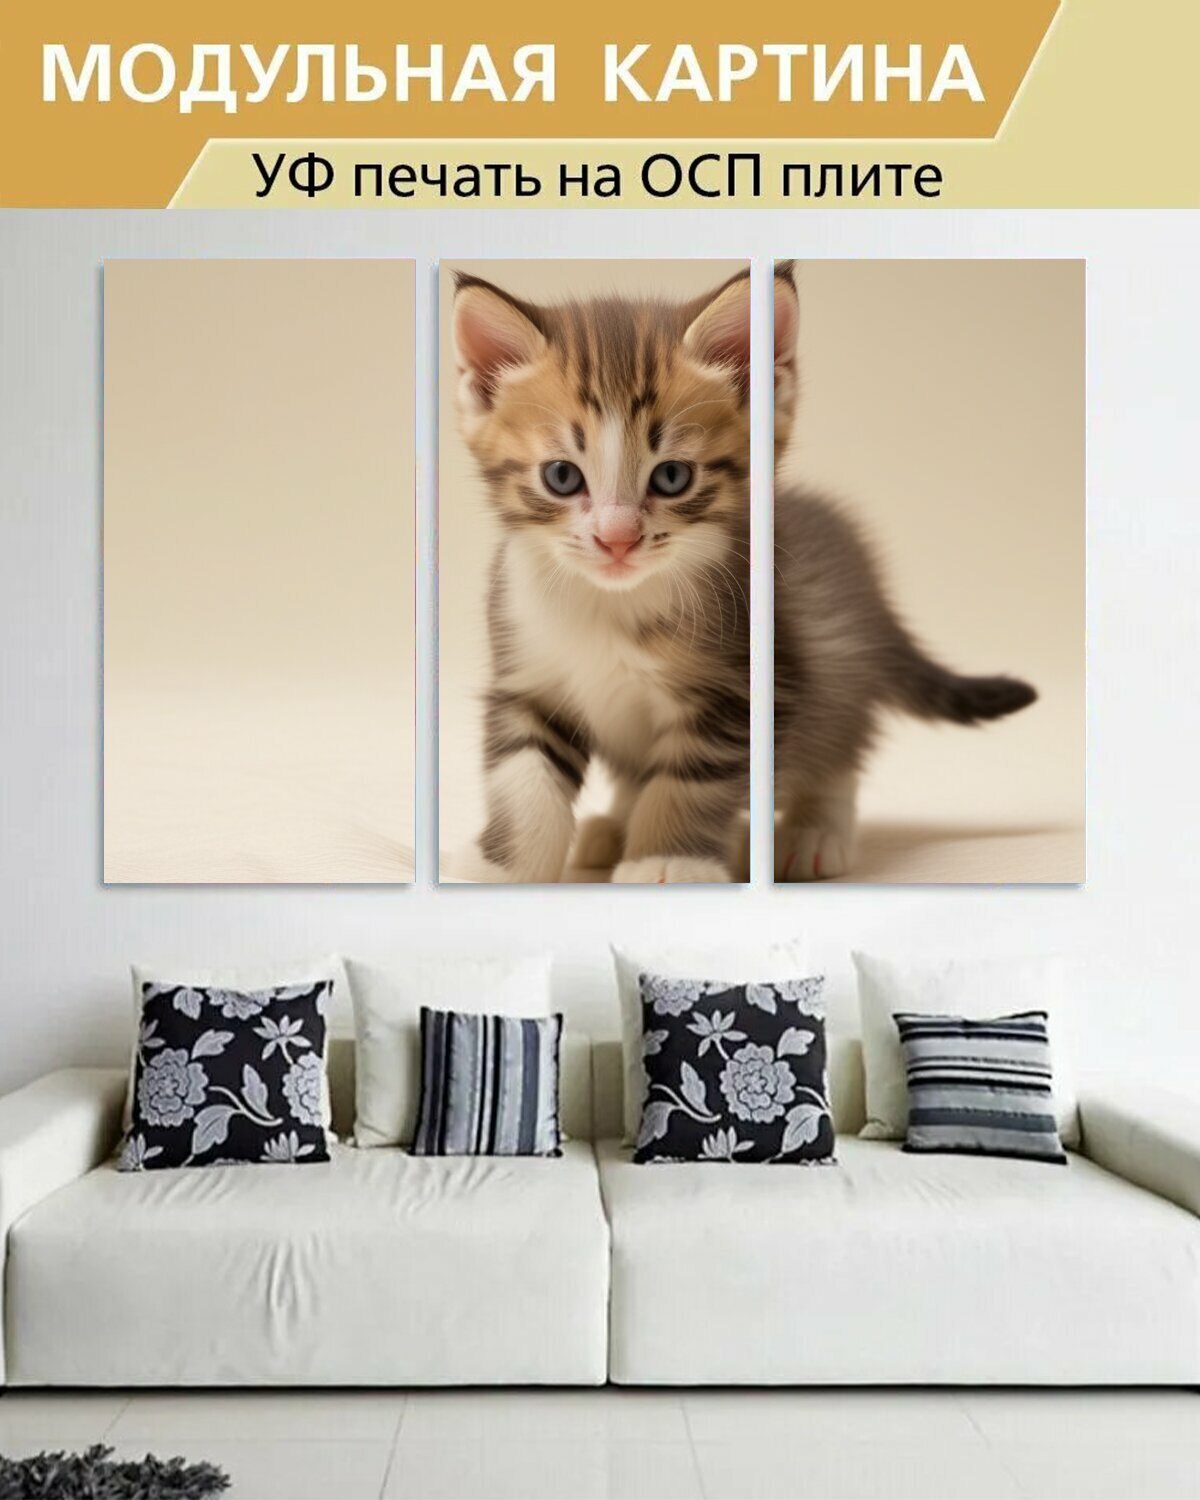 Модульная картина на ОСП любителям природы "Животные, котенок, пушистый" 188x125 см. 3 части для интерьера на стену